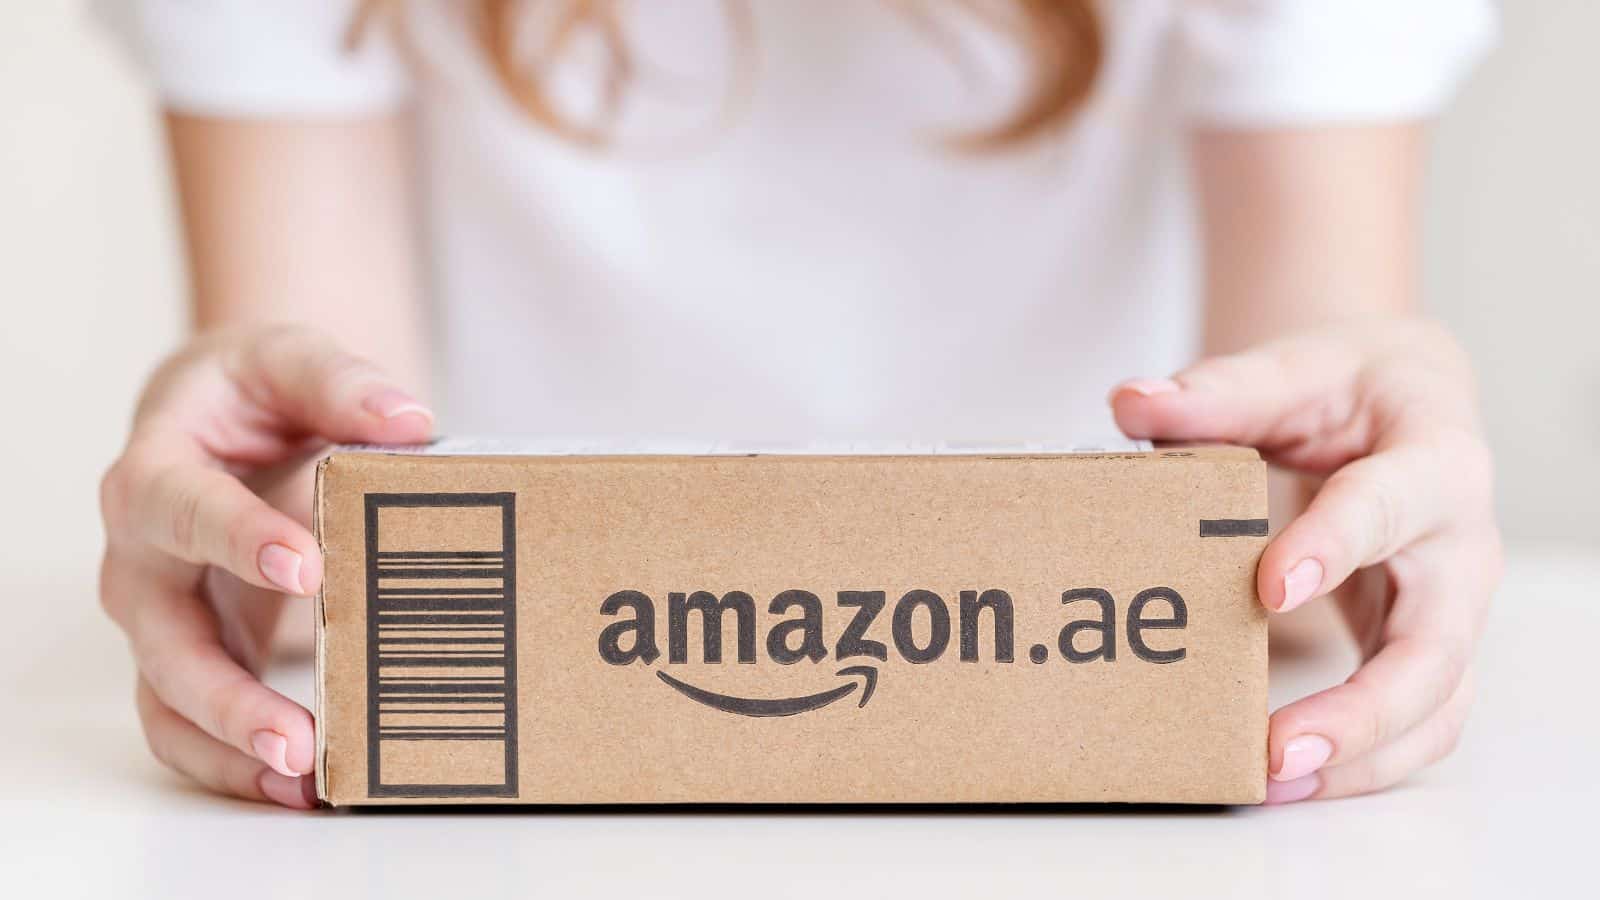 Amazon, La Trasformazione delle Televendite